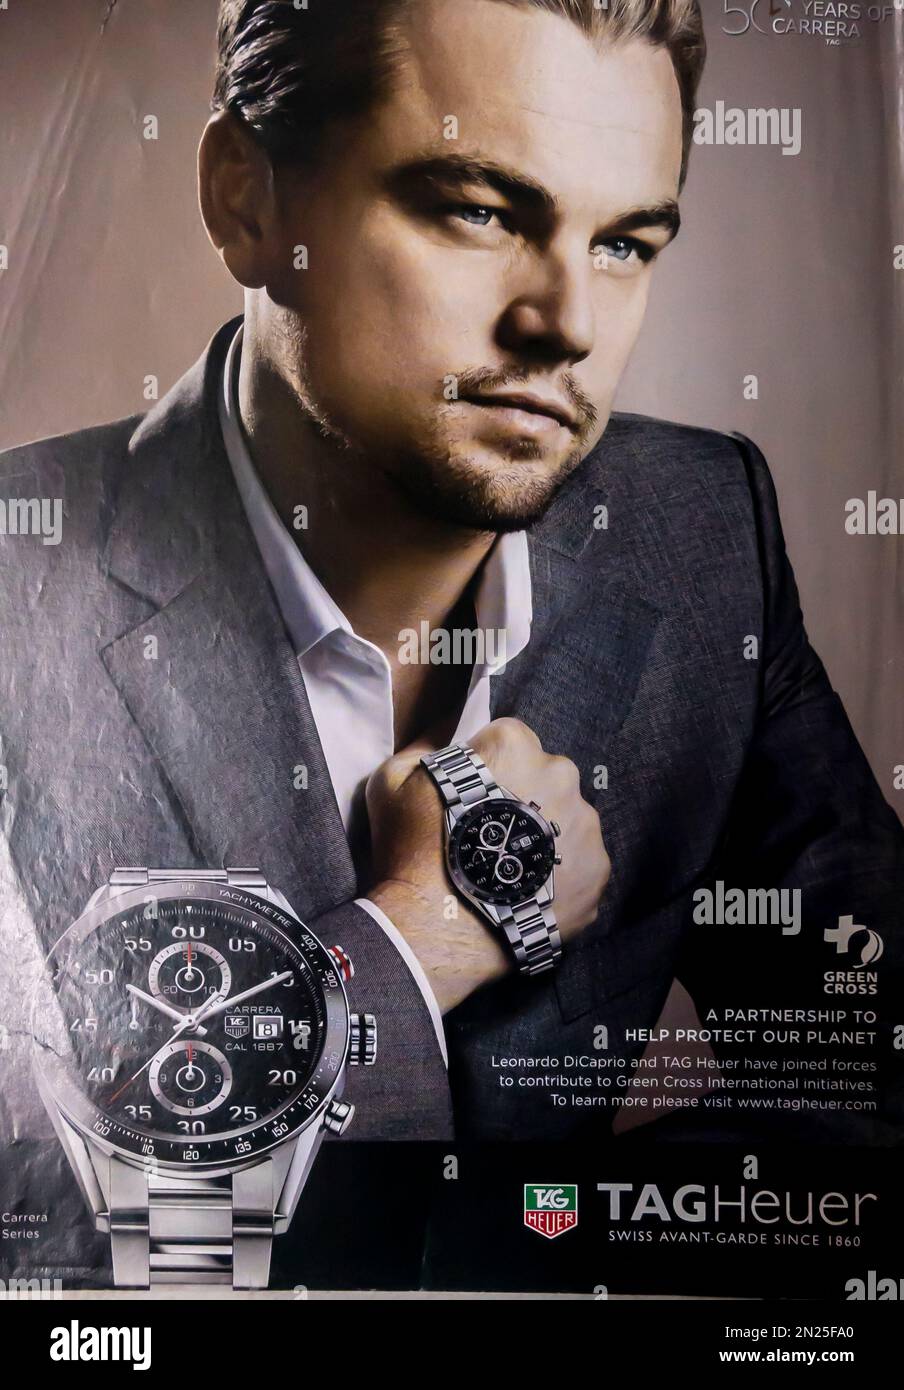 Tag Heuer Uhrenwerbung mit Leonardo Di Caprio in einer Zeitschrift 2014  Stockfotografie - Alamy